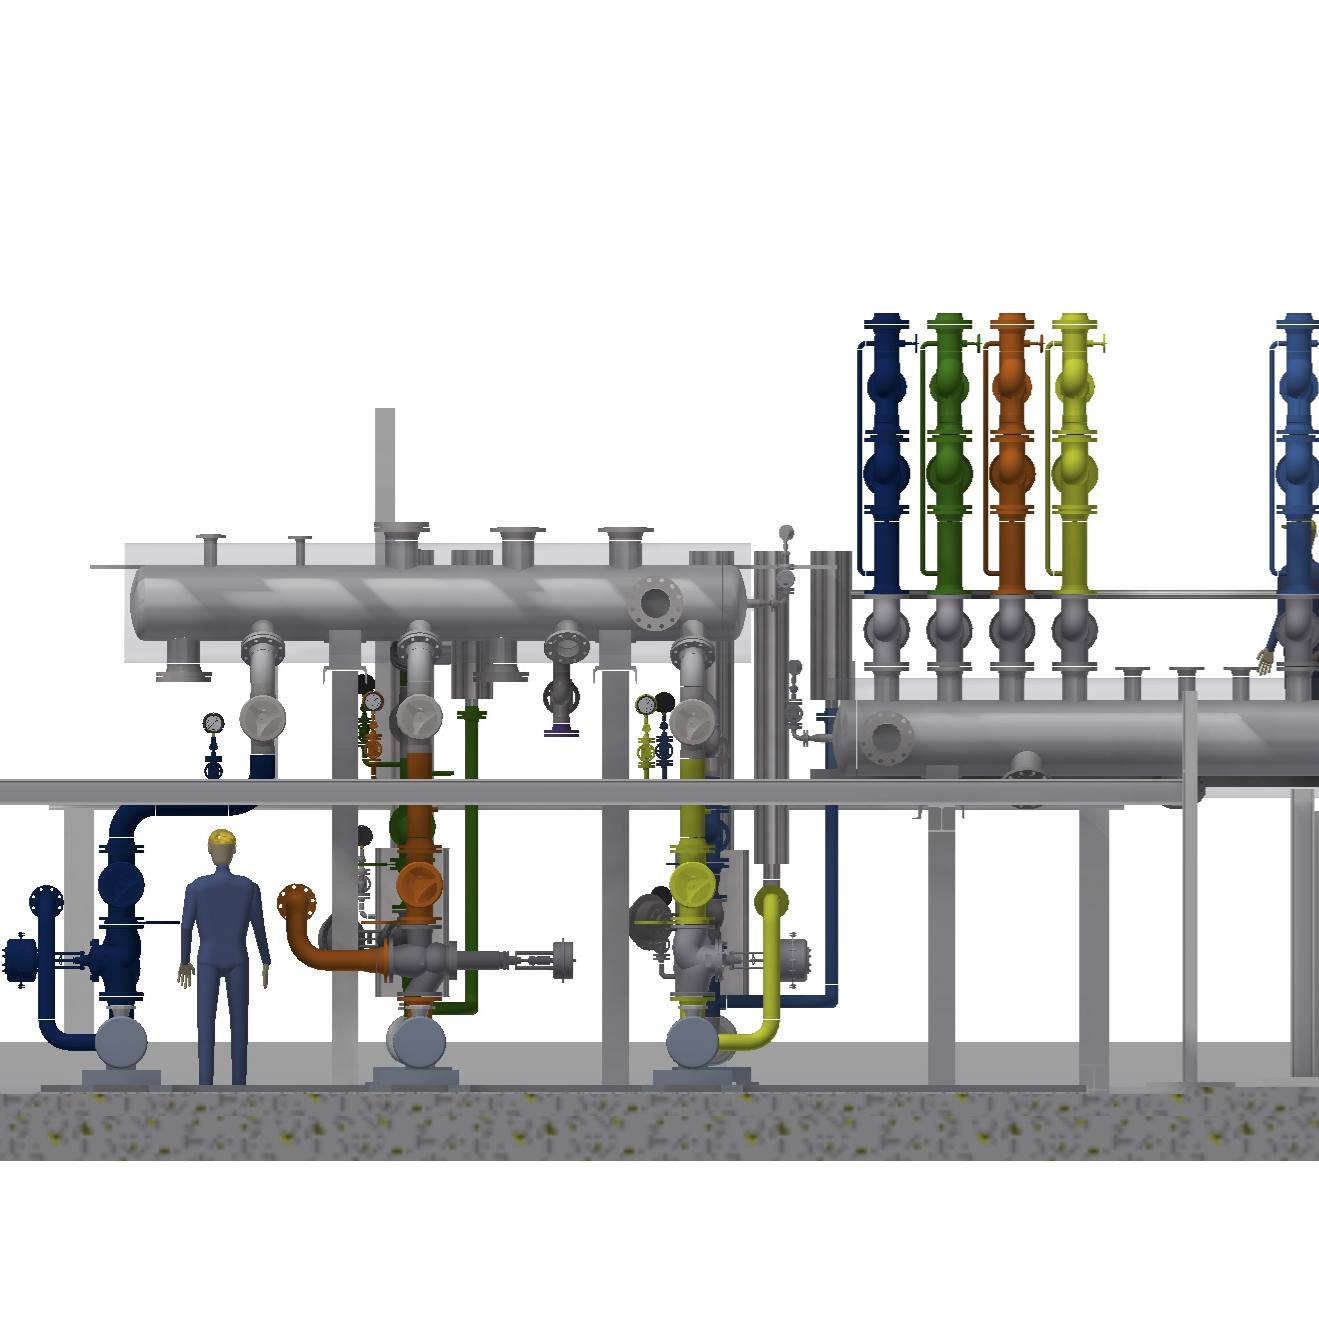 Planungen zum Umbau einer bestehenden Thermalölstation